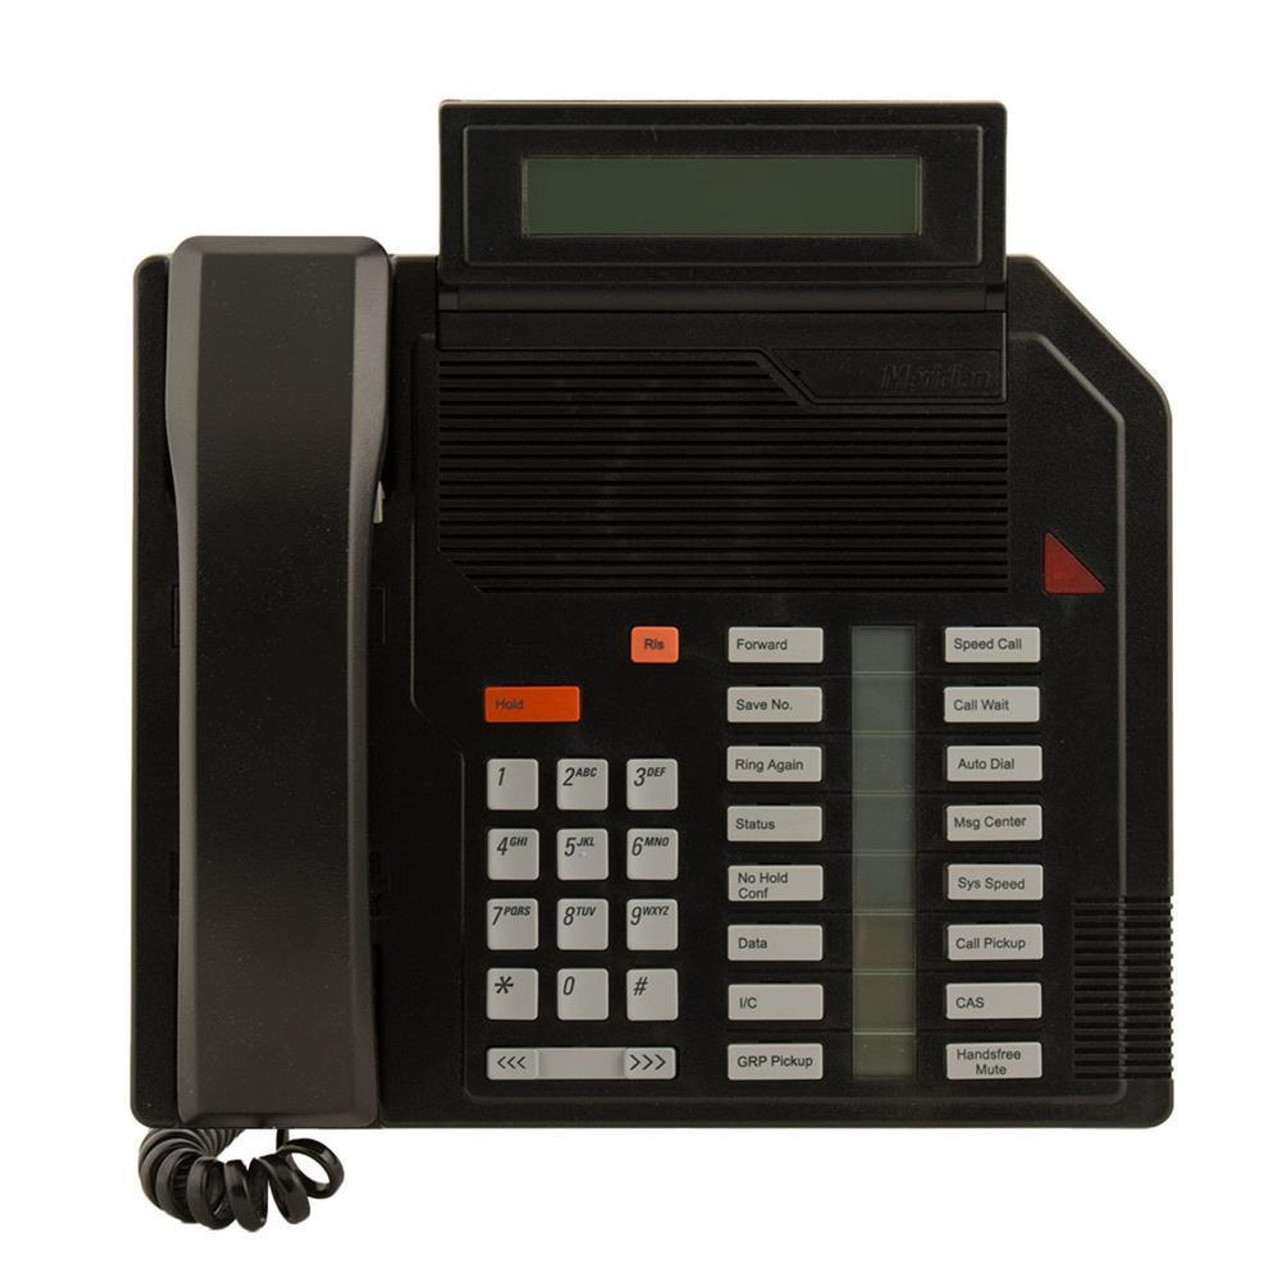 NT2K16GD03 Nortel Meridian M2616 Digital Phone(black) (Refurbished)